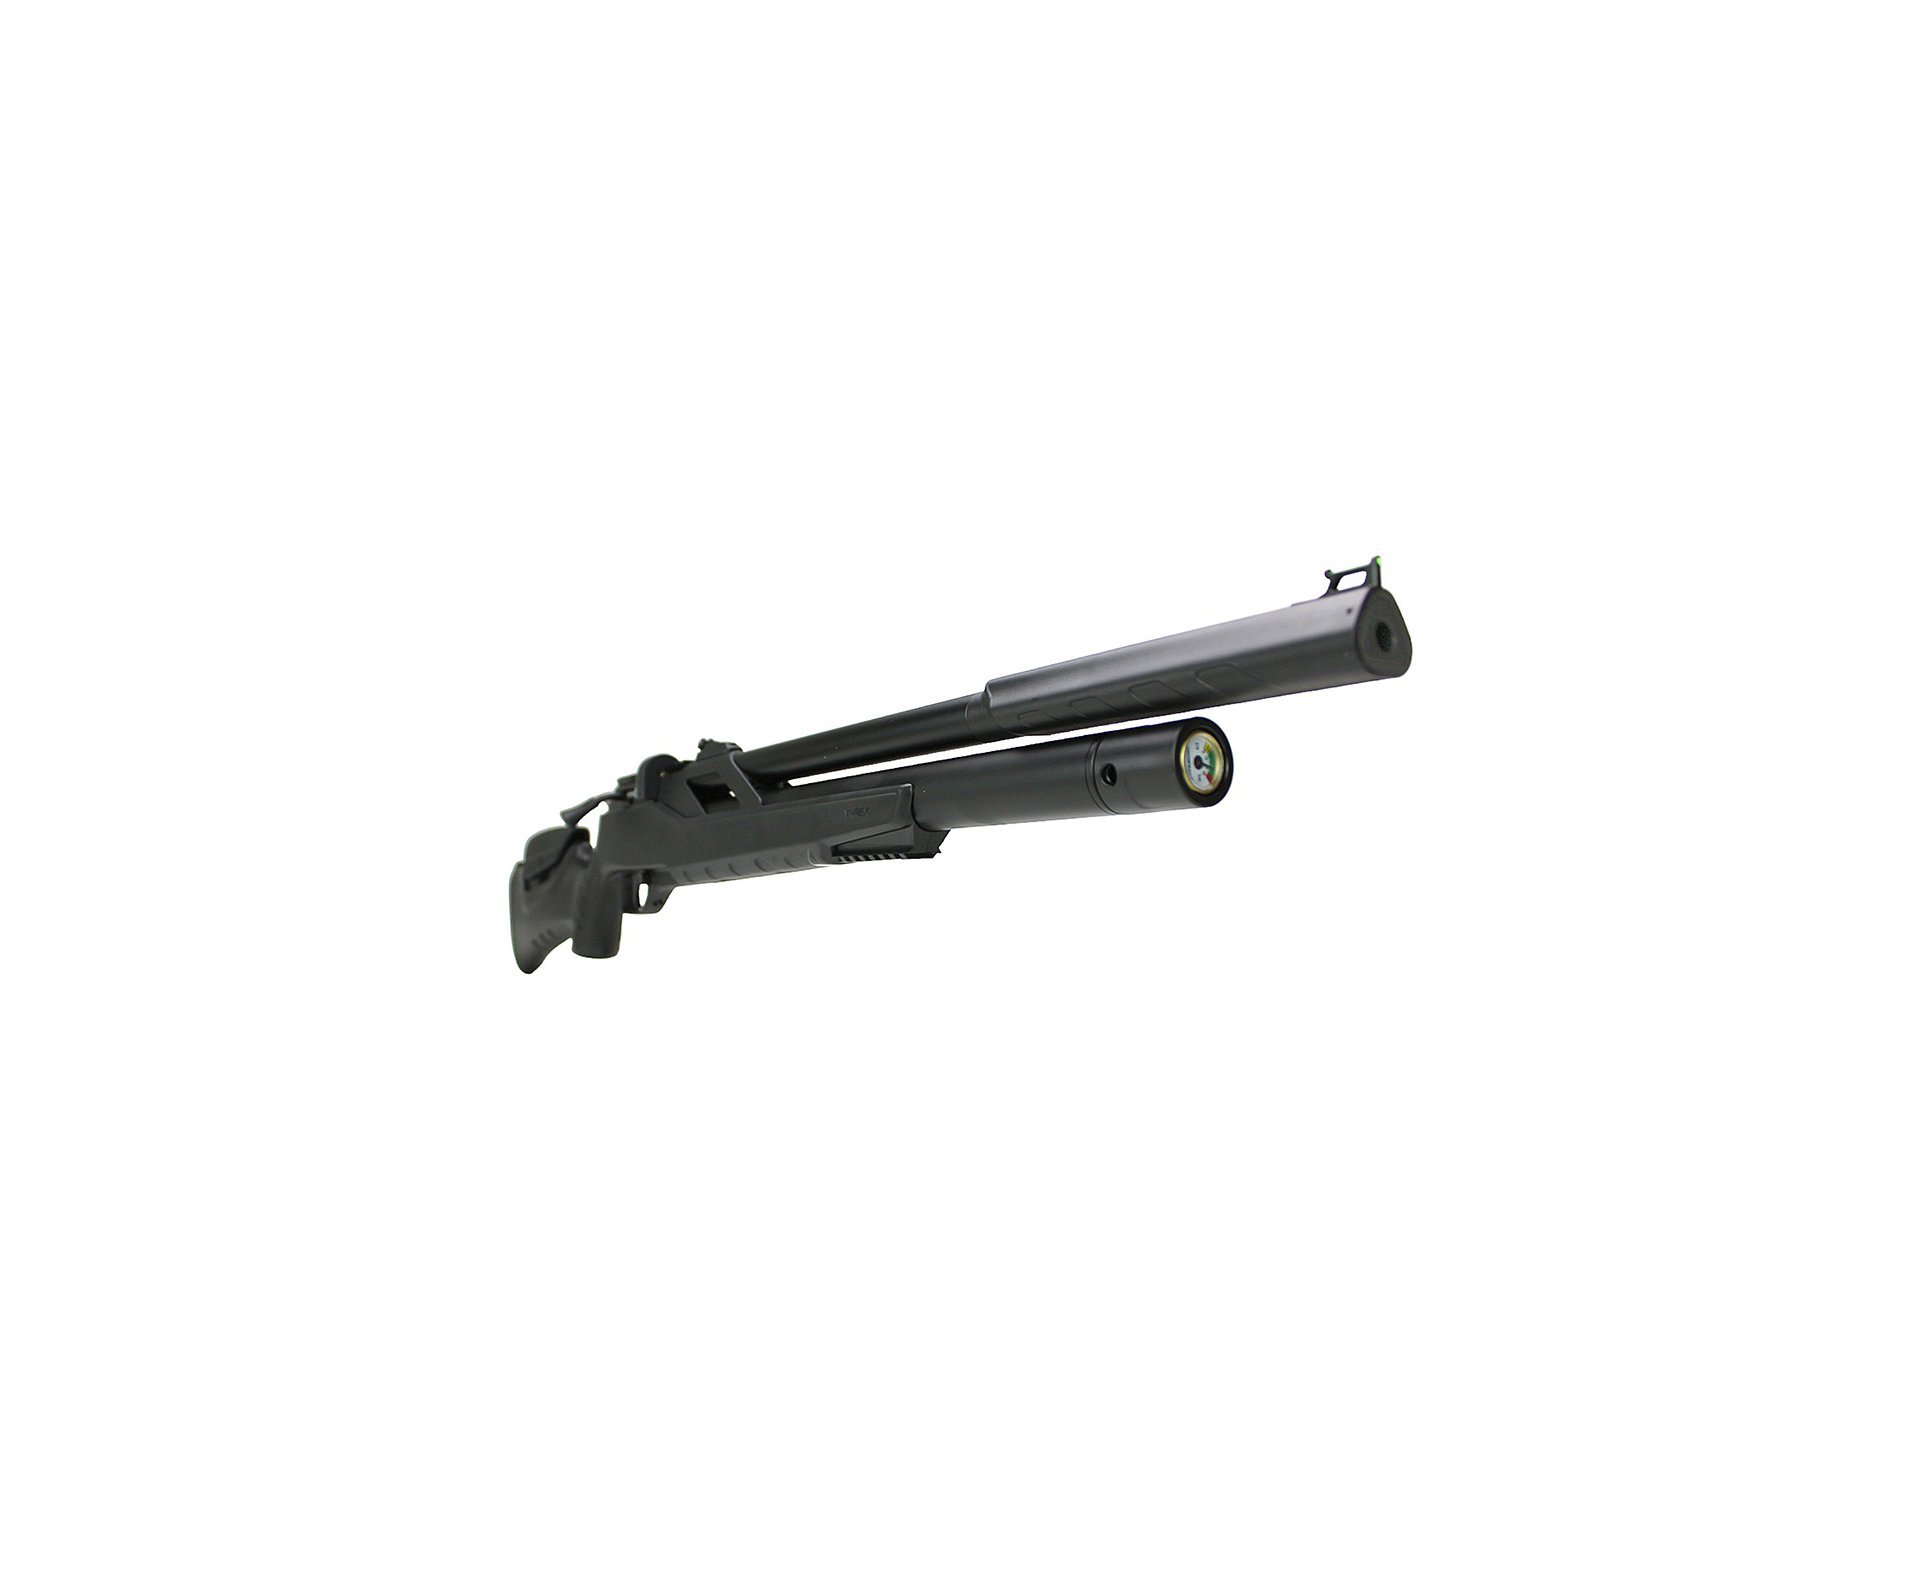 Carabina de Pressão PCP Artemis T-REX 4.5mm com Válvula Reguladora - Fixxar + Bomba + Capa + Chumbinho + Kamuff + Alvos